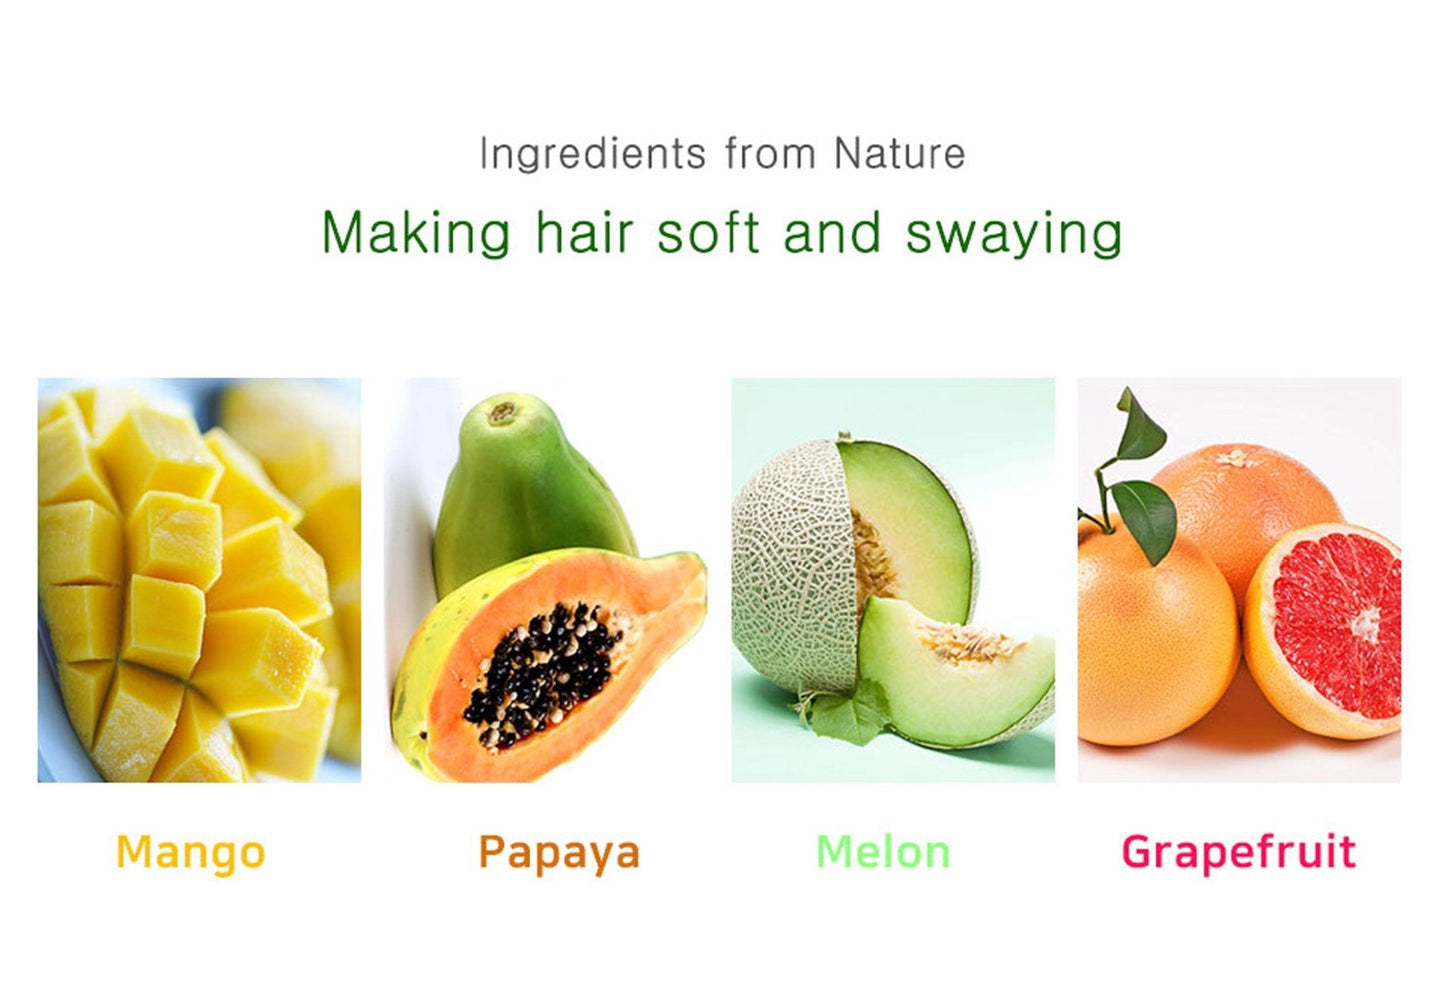 HAU Professional Mango Shampoo for Dry Damaged Hair 12 fl oz - Adrasse Cosmetics